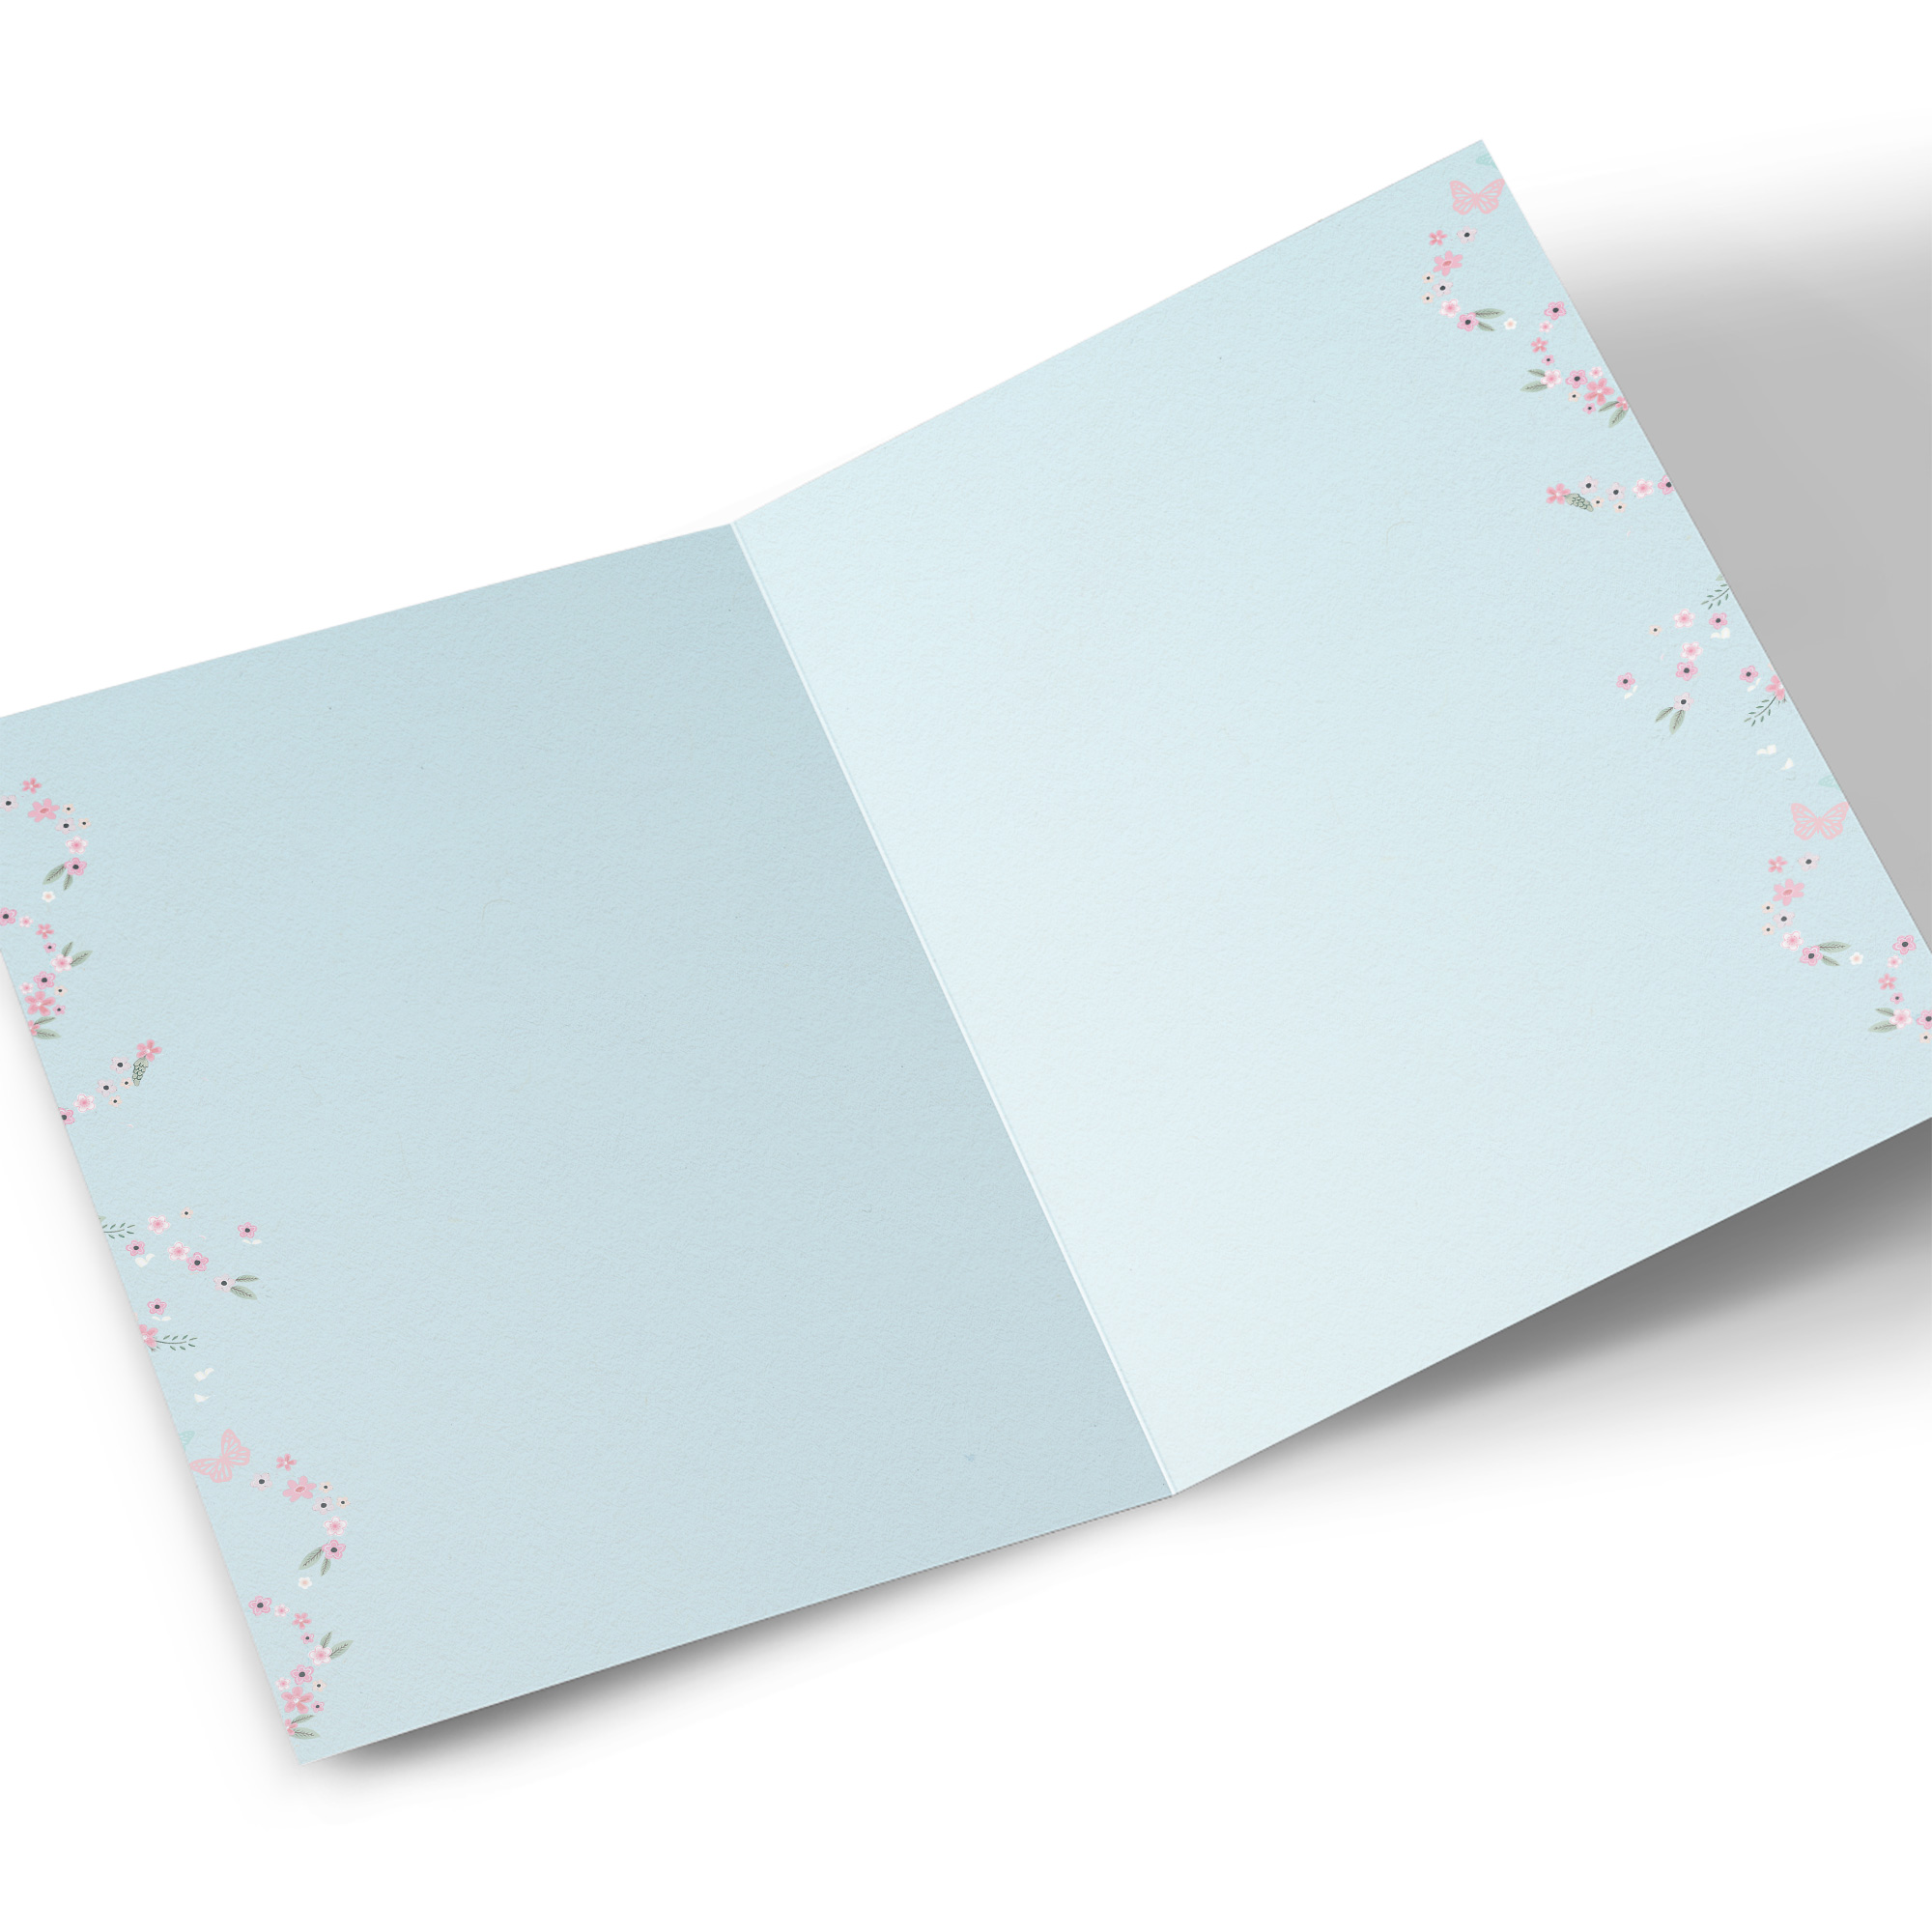 Personalised Wedding Card - Car & Confetti